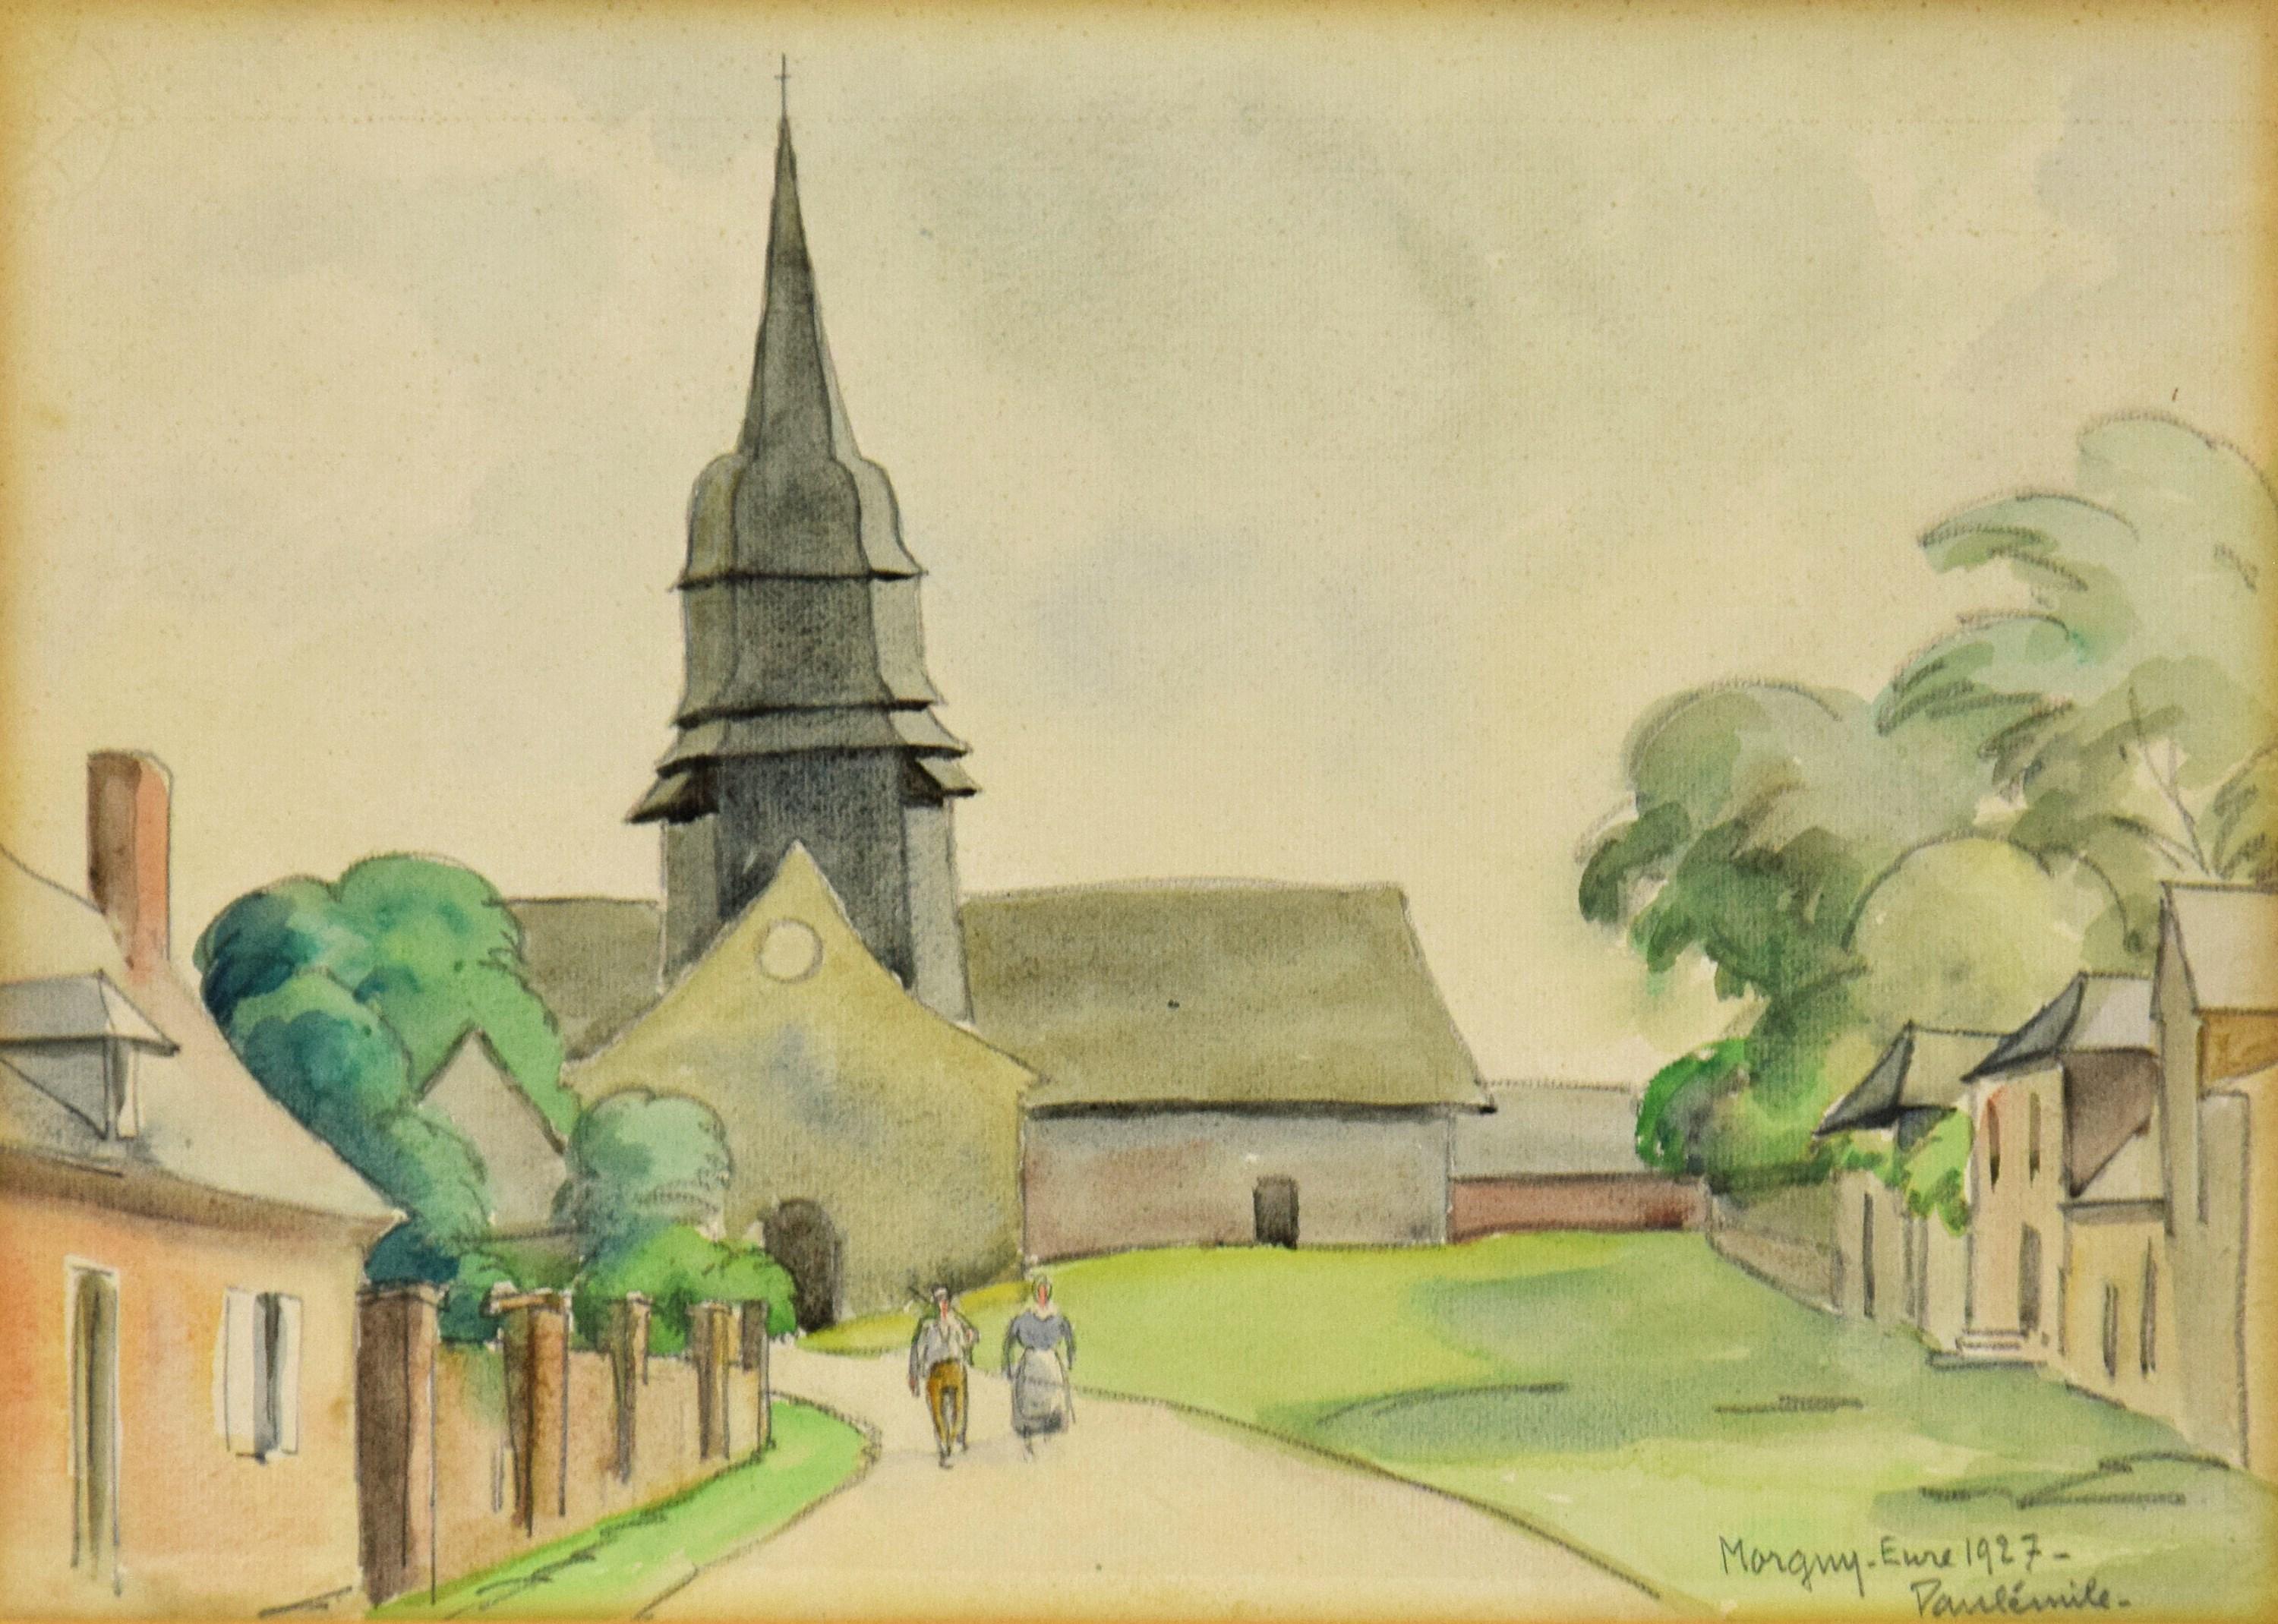 L'Église de Morgny-Eure von Paulémile Pissarro, 1927